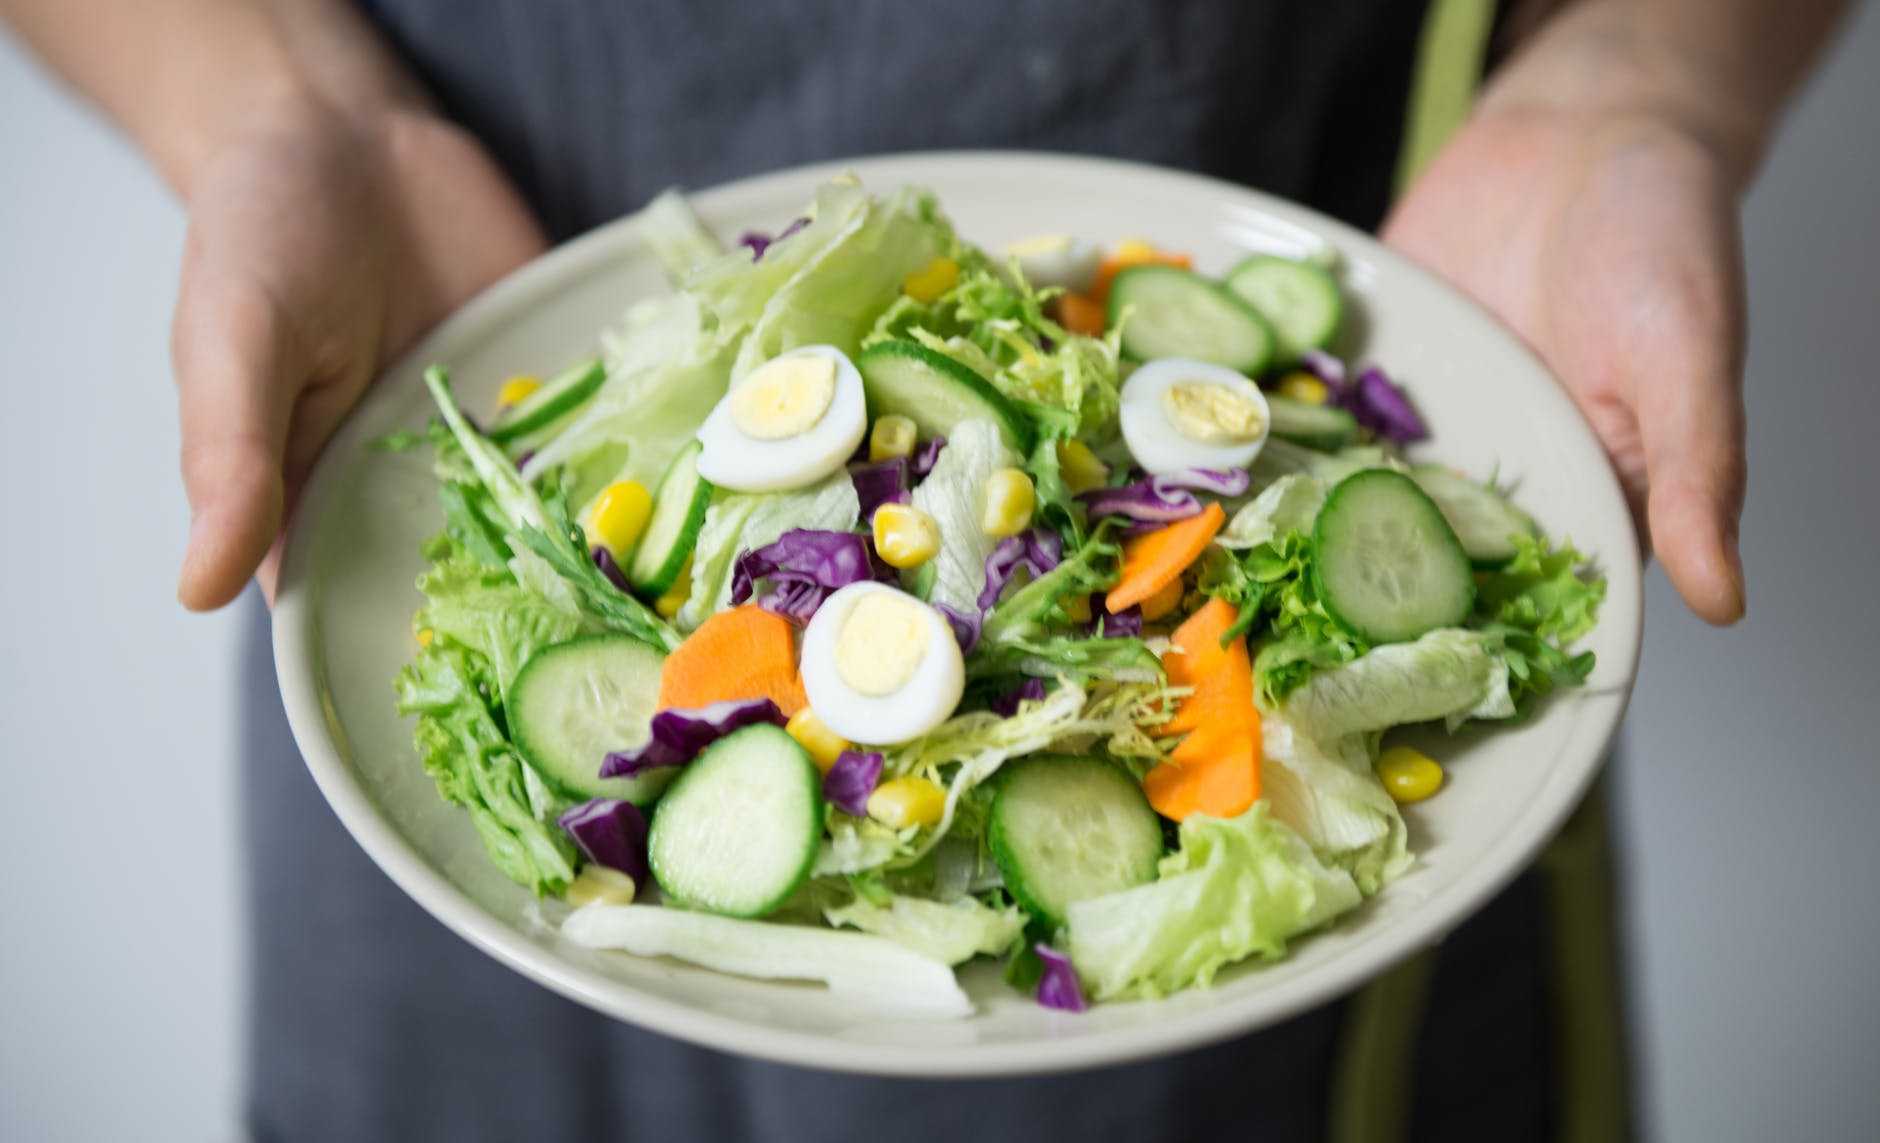 Ensalada verde, el plato más consumido. Foto: pexels